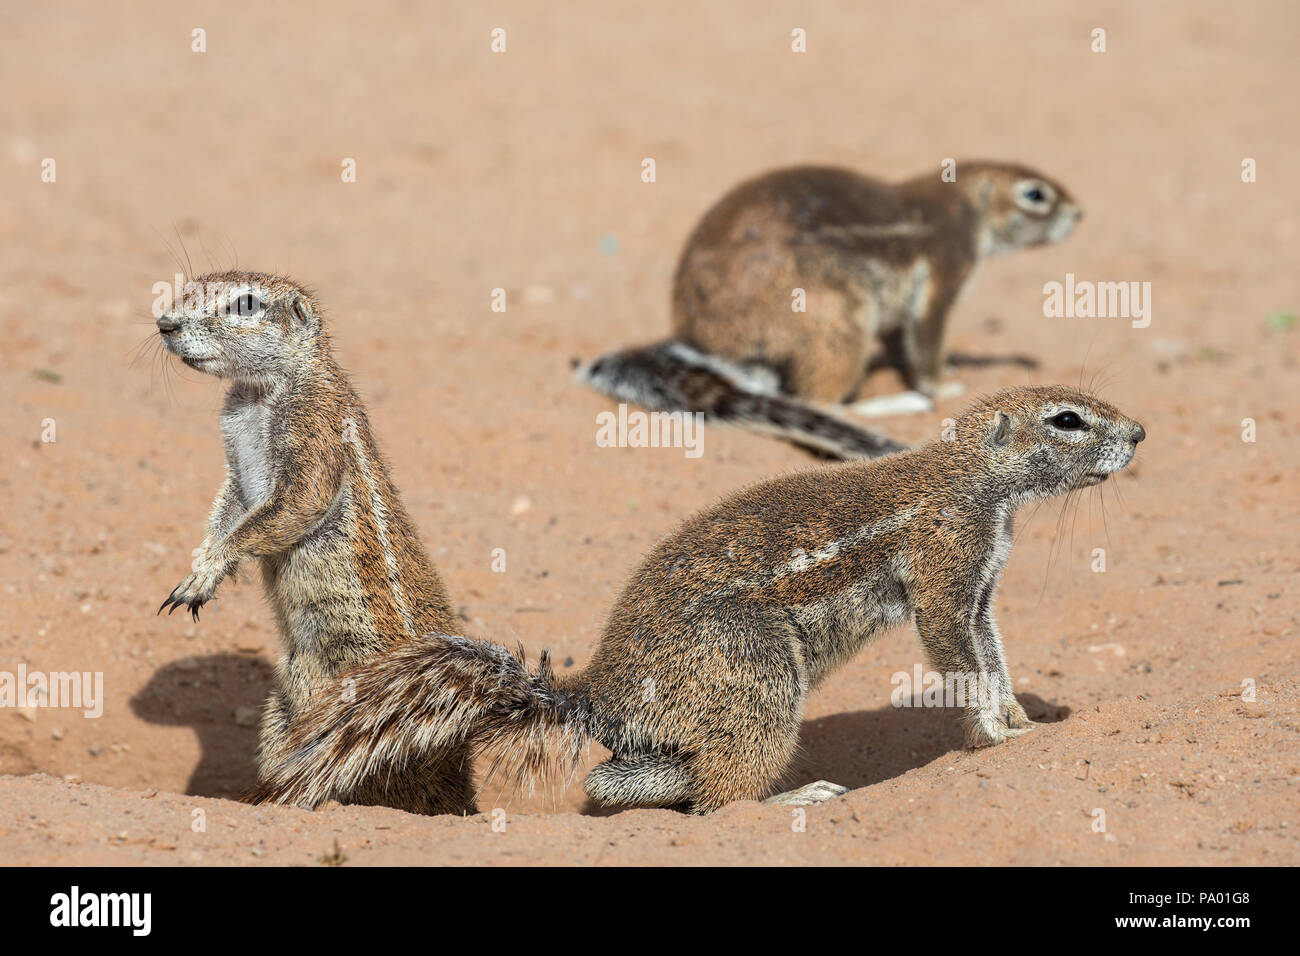 Les écureuils terrestres (Ha83 inauris), Kgalagadi Transfrontier Park, Northern Cape, Afrique du Sud Banque D'Images